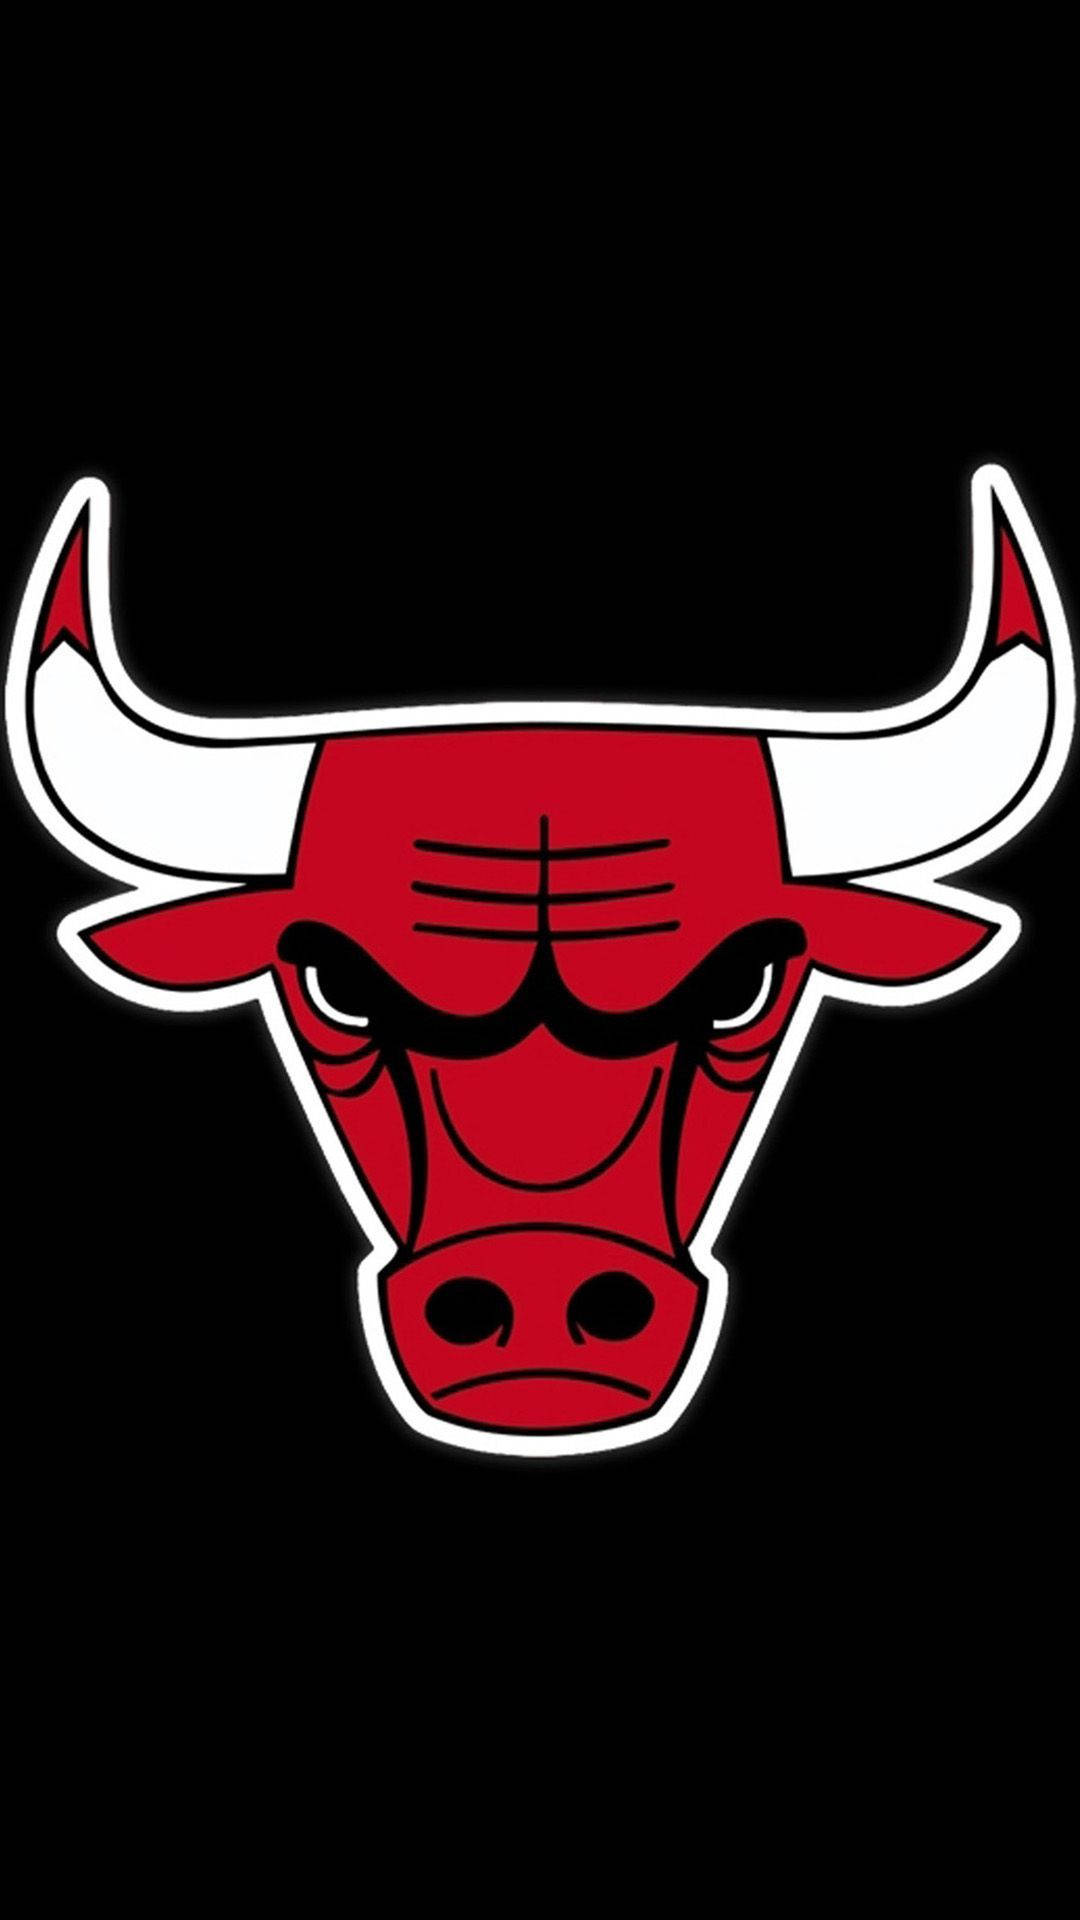 Glossy Chicago Bulls Logo For Mobile Screens Wallpaper